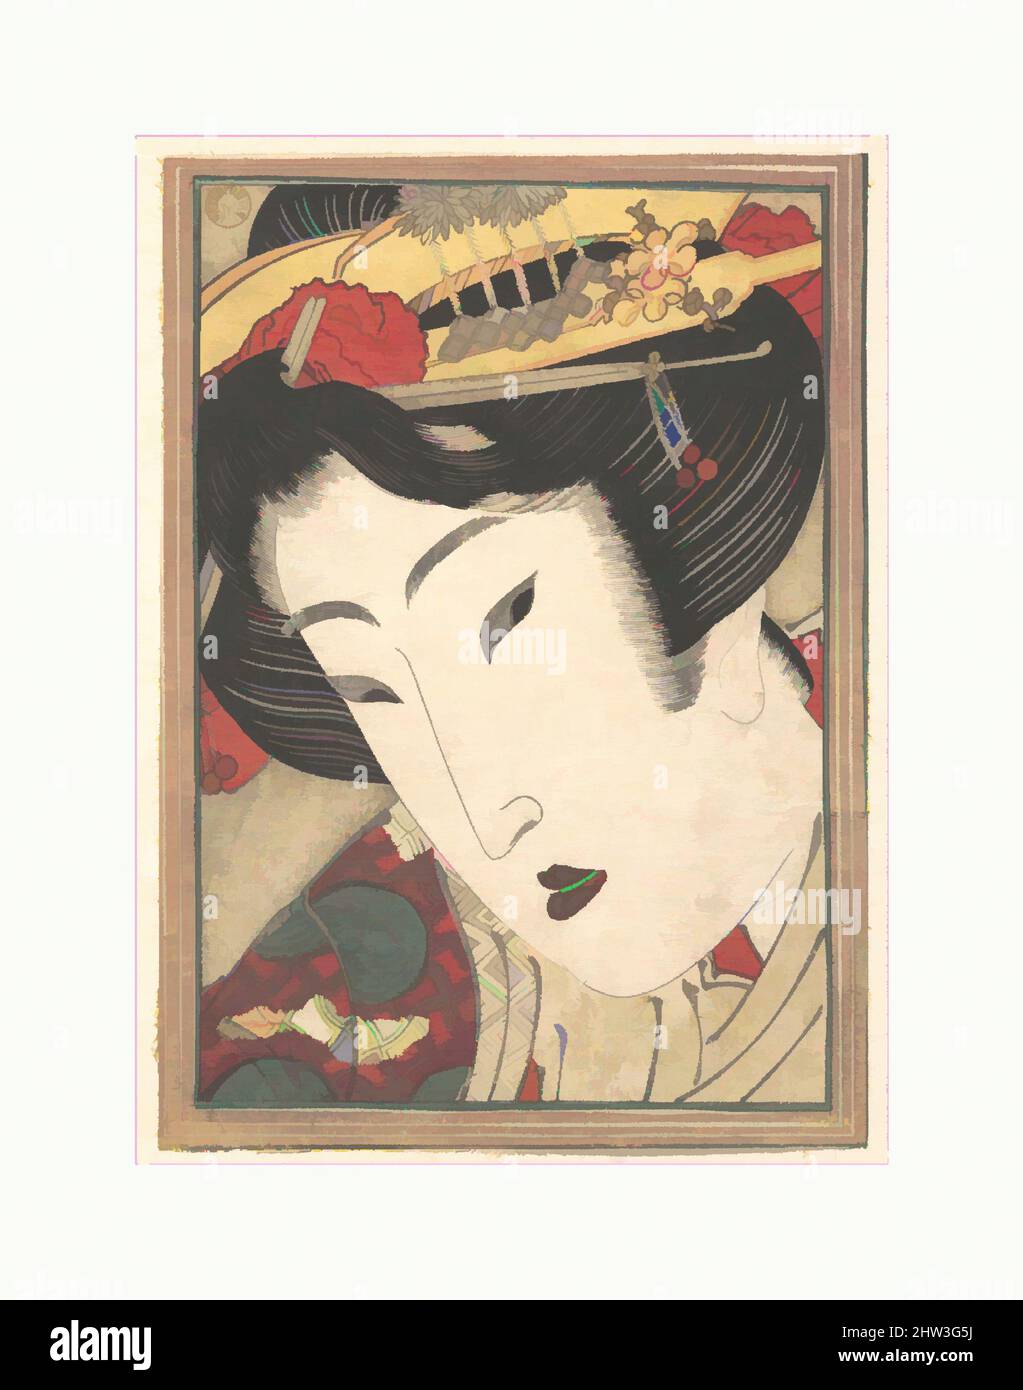 Art inspiré par Geisha rejeté de passions rafraîchies par Springtime Snow, époque Edo (1615–1868), 1824, Japon, imprimé en polychrome sur bois; Encre et couleur sur papier, H. 7 po. (17,8 cm) ; avec 5 po (12,7 cm), Prints, Keisai Eisen (japonais, 1790–1848), l'un des ukiyo-e les plus excentriques, oeuvres classiques modernisées par Artotop avec une touche de modernité. Formes, couleur et valeur, impact visuel accrocheur sur l'art émotions par la liberté d'œuvres d'art d'une manière contemporaine. Un message intemporel qui cherche une nouvelle direction créative. Artistes qui se tournent vers le support numérique et créent le NFT Artotop Banque D'Images